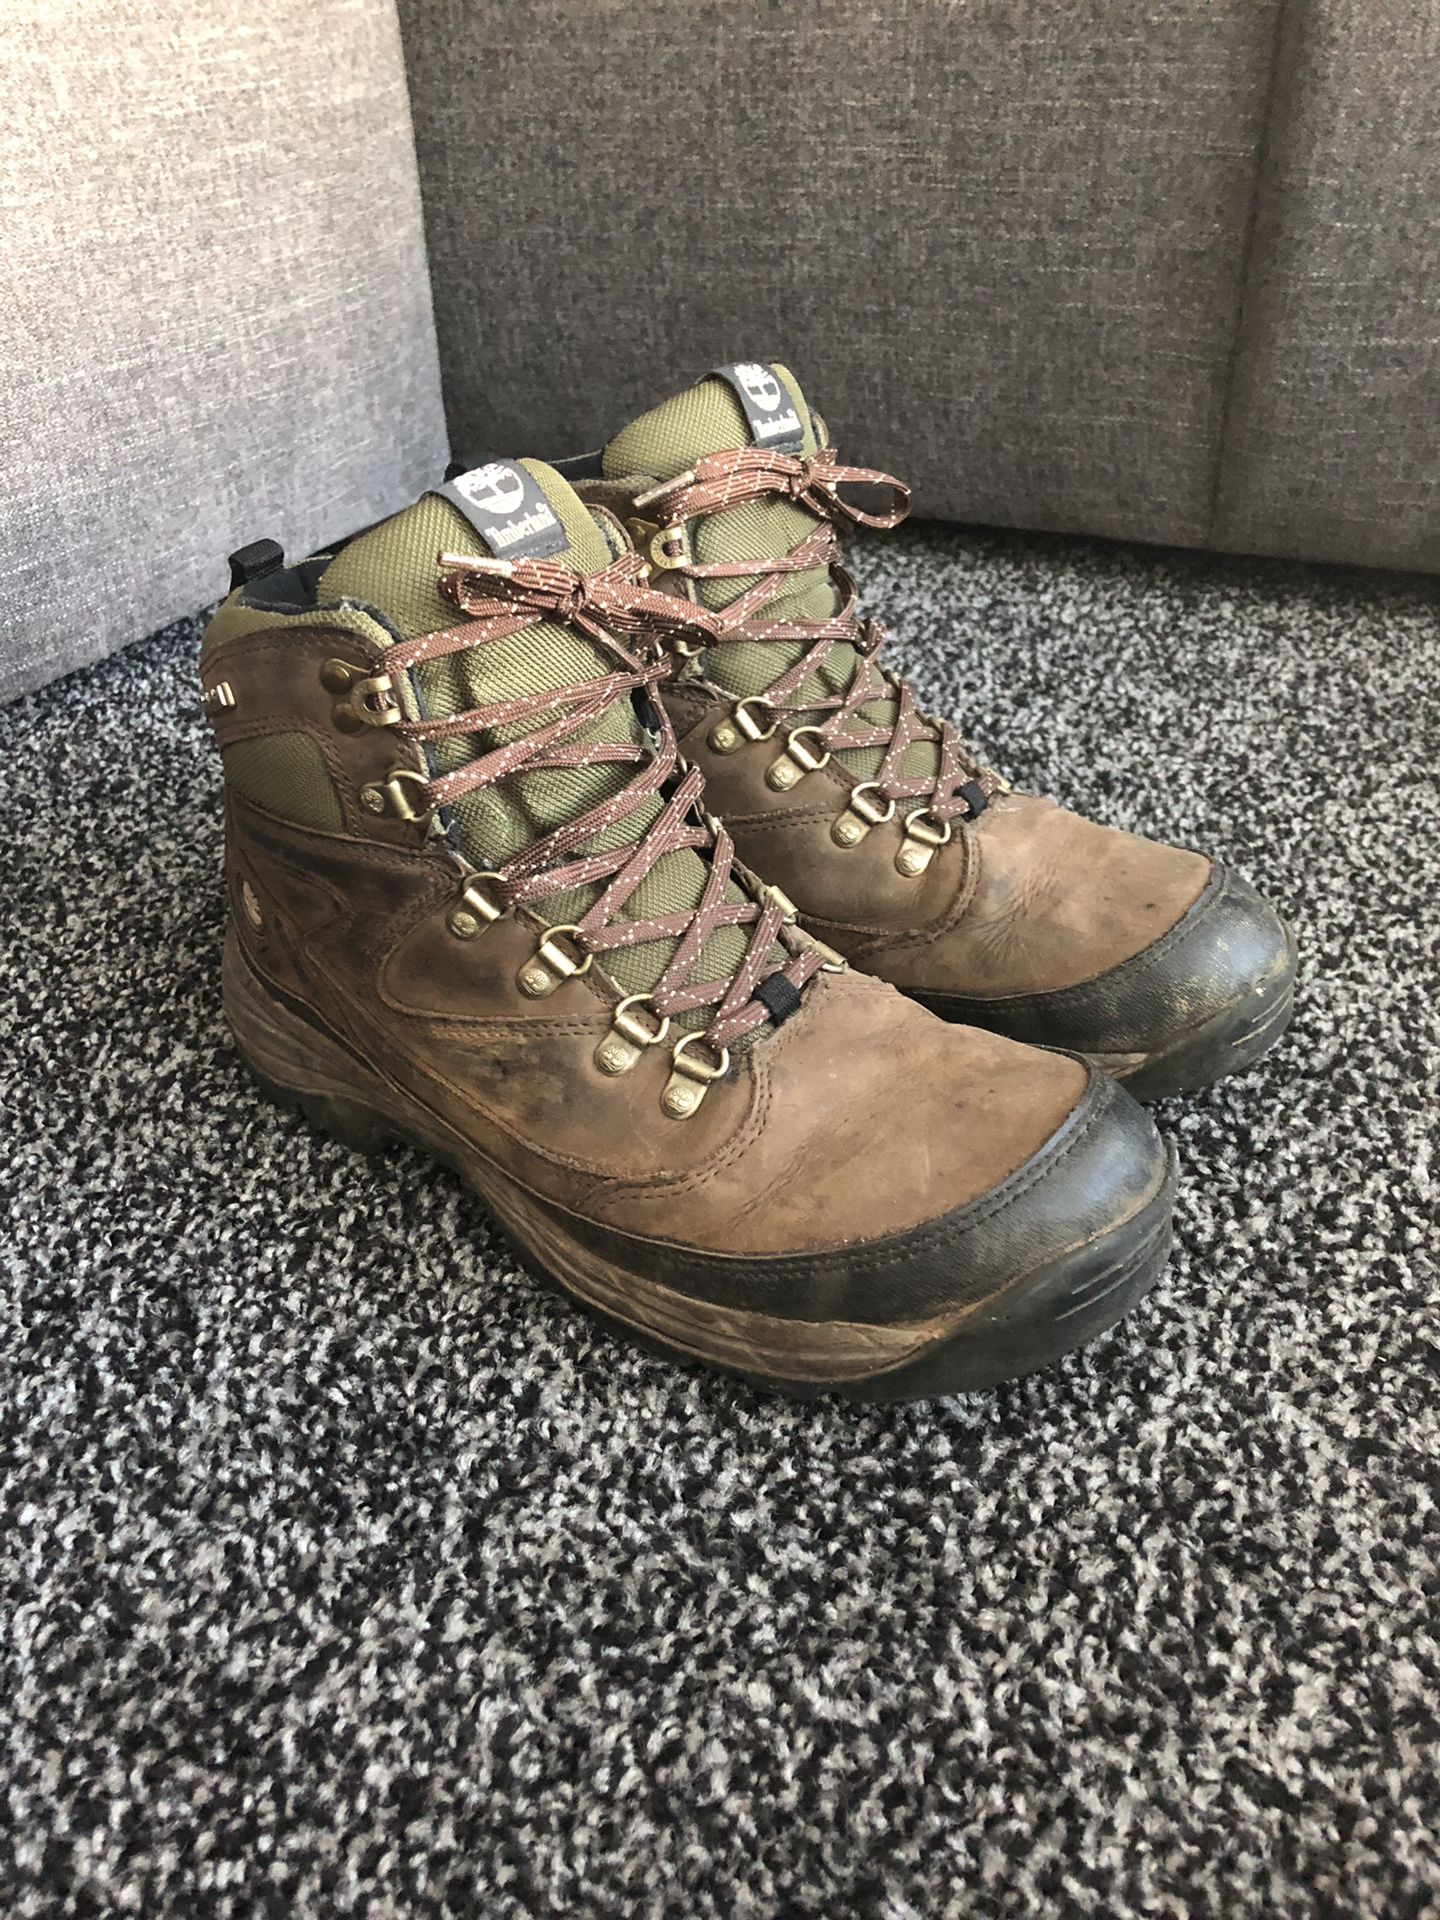 Timberland Boots - Waterproof - Size 9 1/2